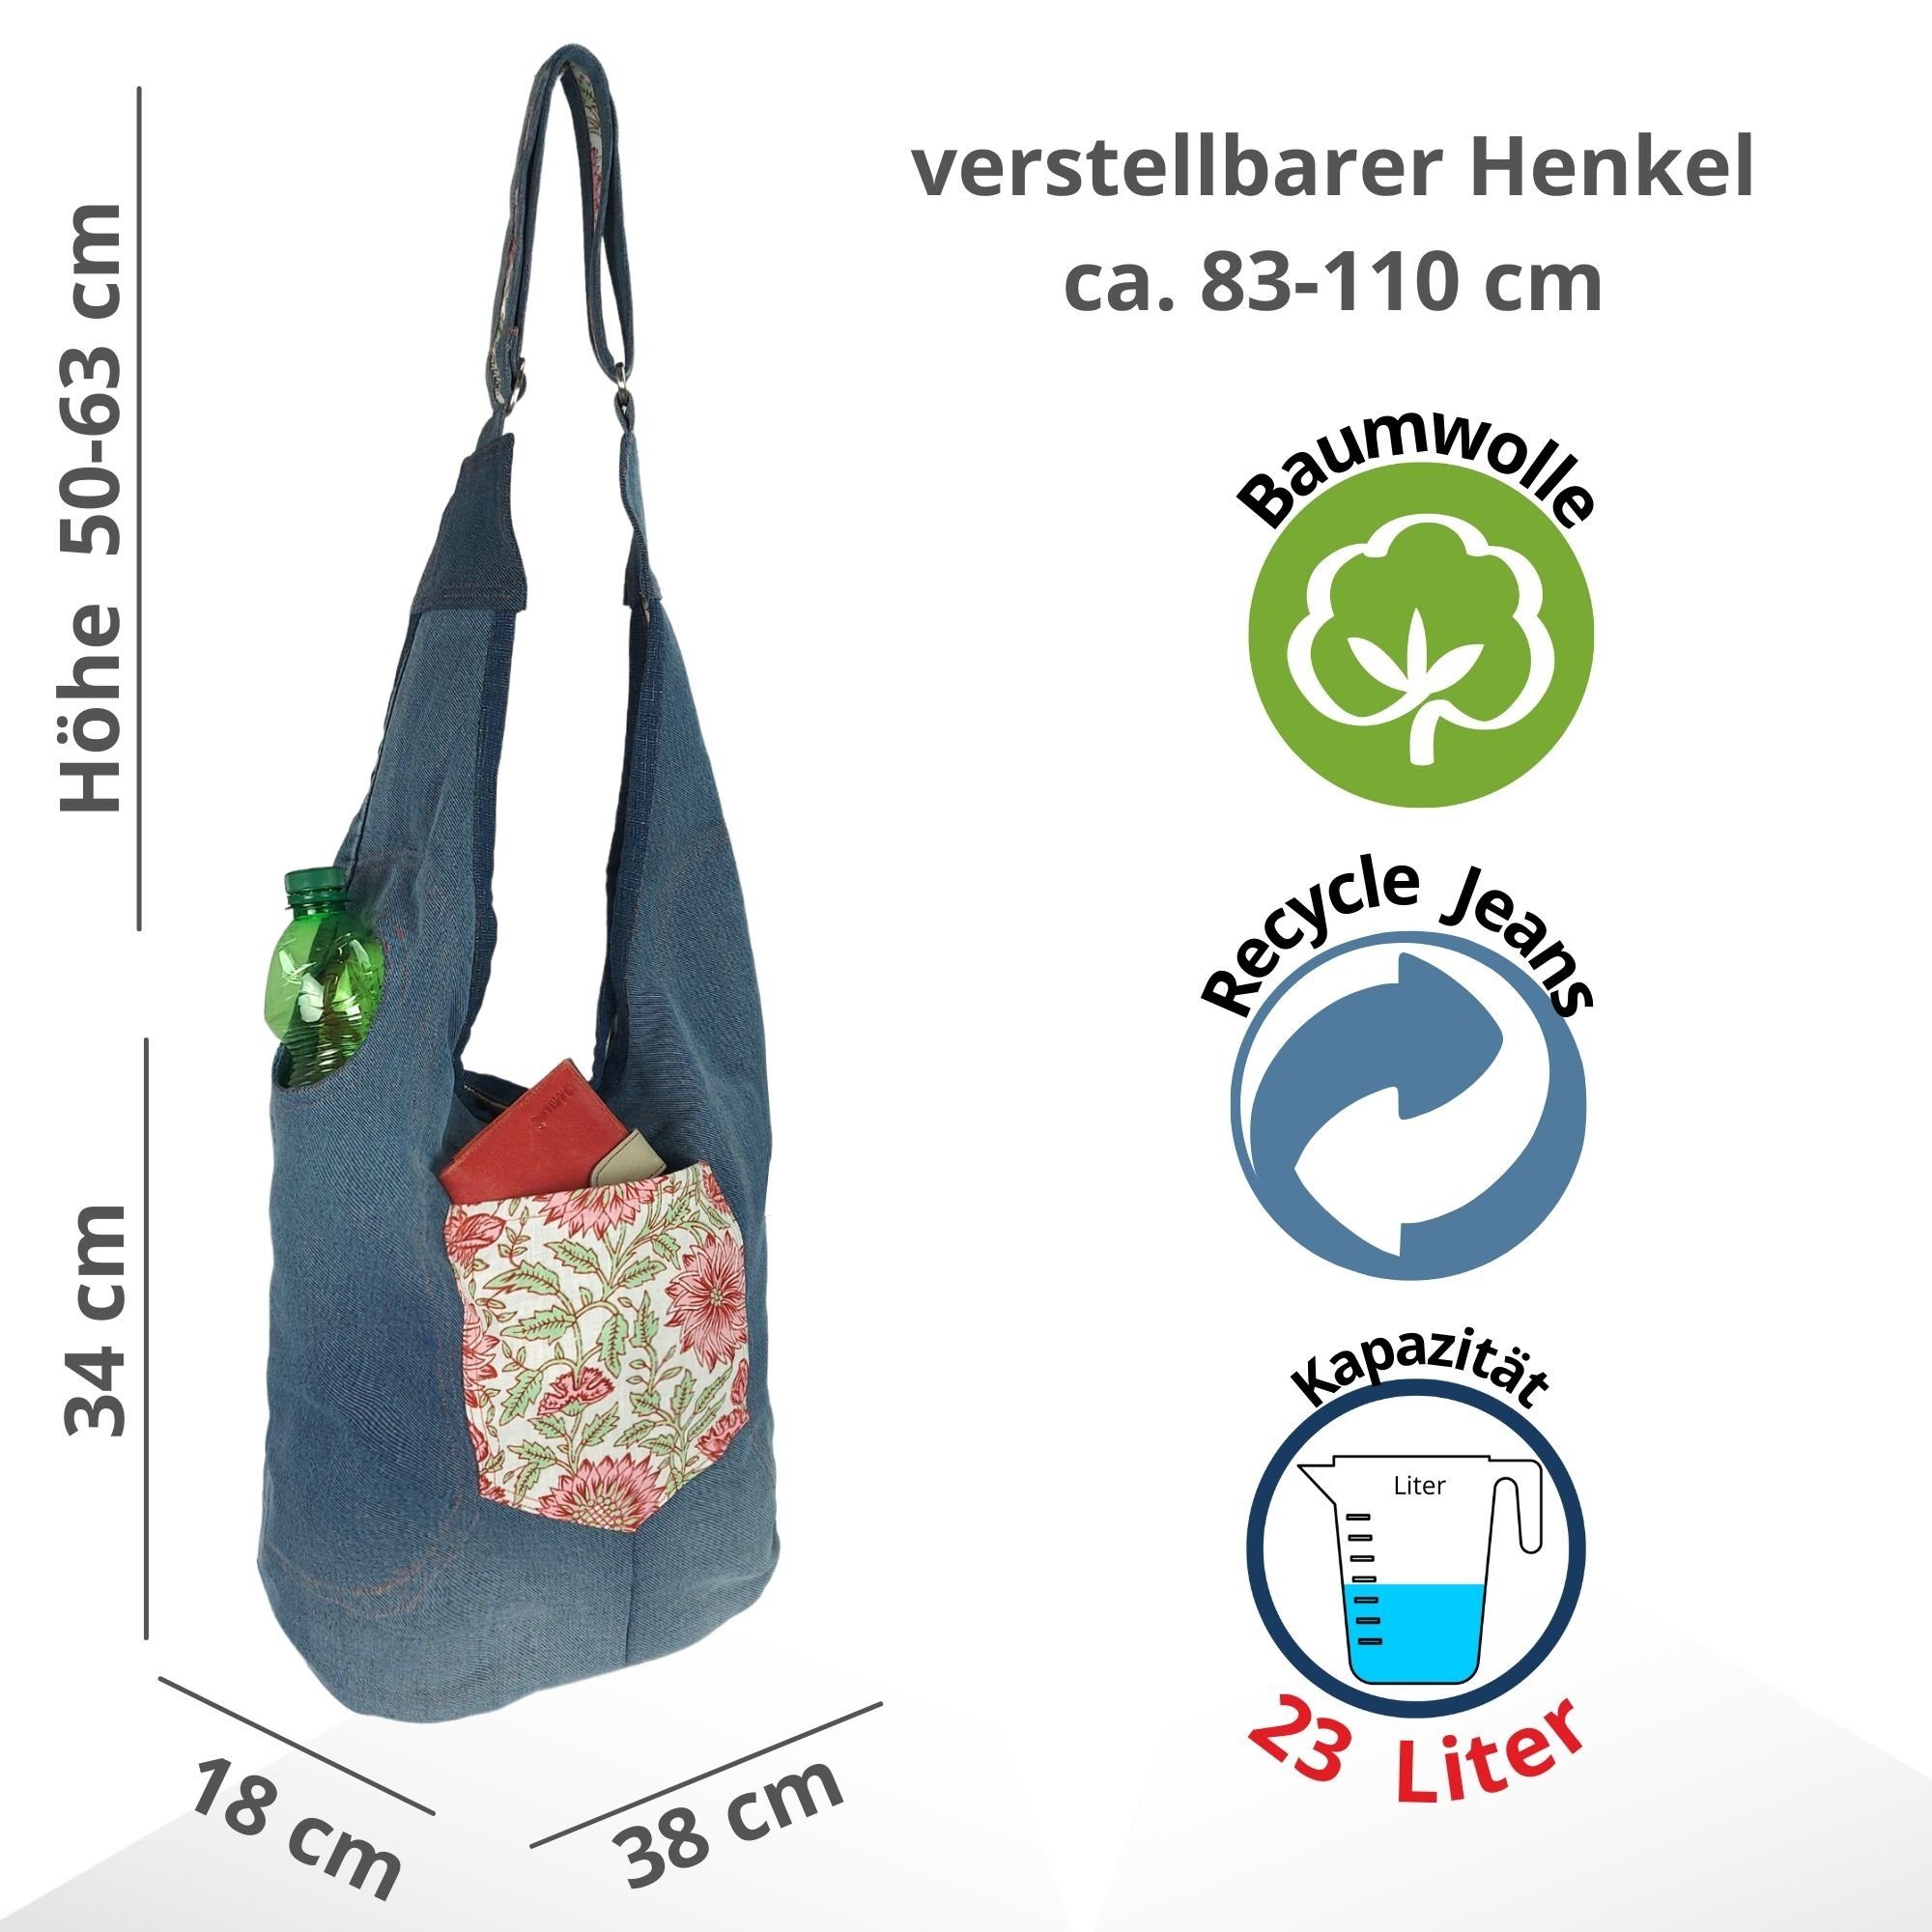 Steig tragbare Tasche Sunsa blau grün 2 Seitig Jeanstasche, Hobo Nachhaltige Wendbare Rosa Hobo Tasche, Tasche, 2 tragbare Umhängetasche